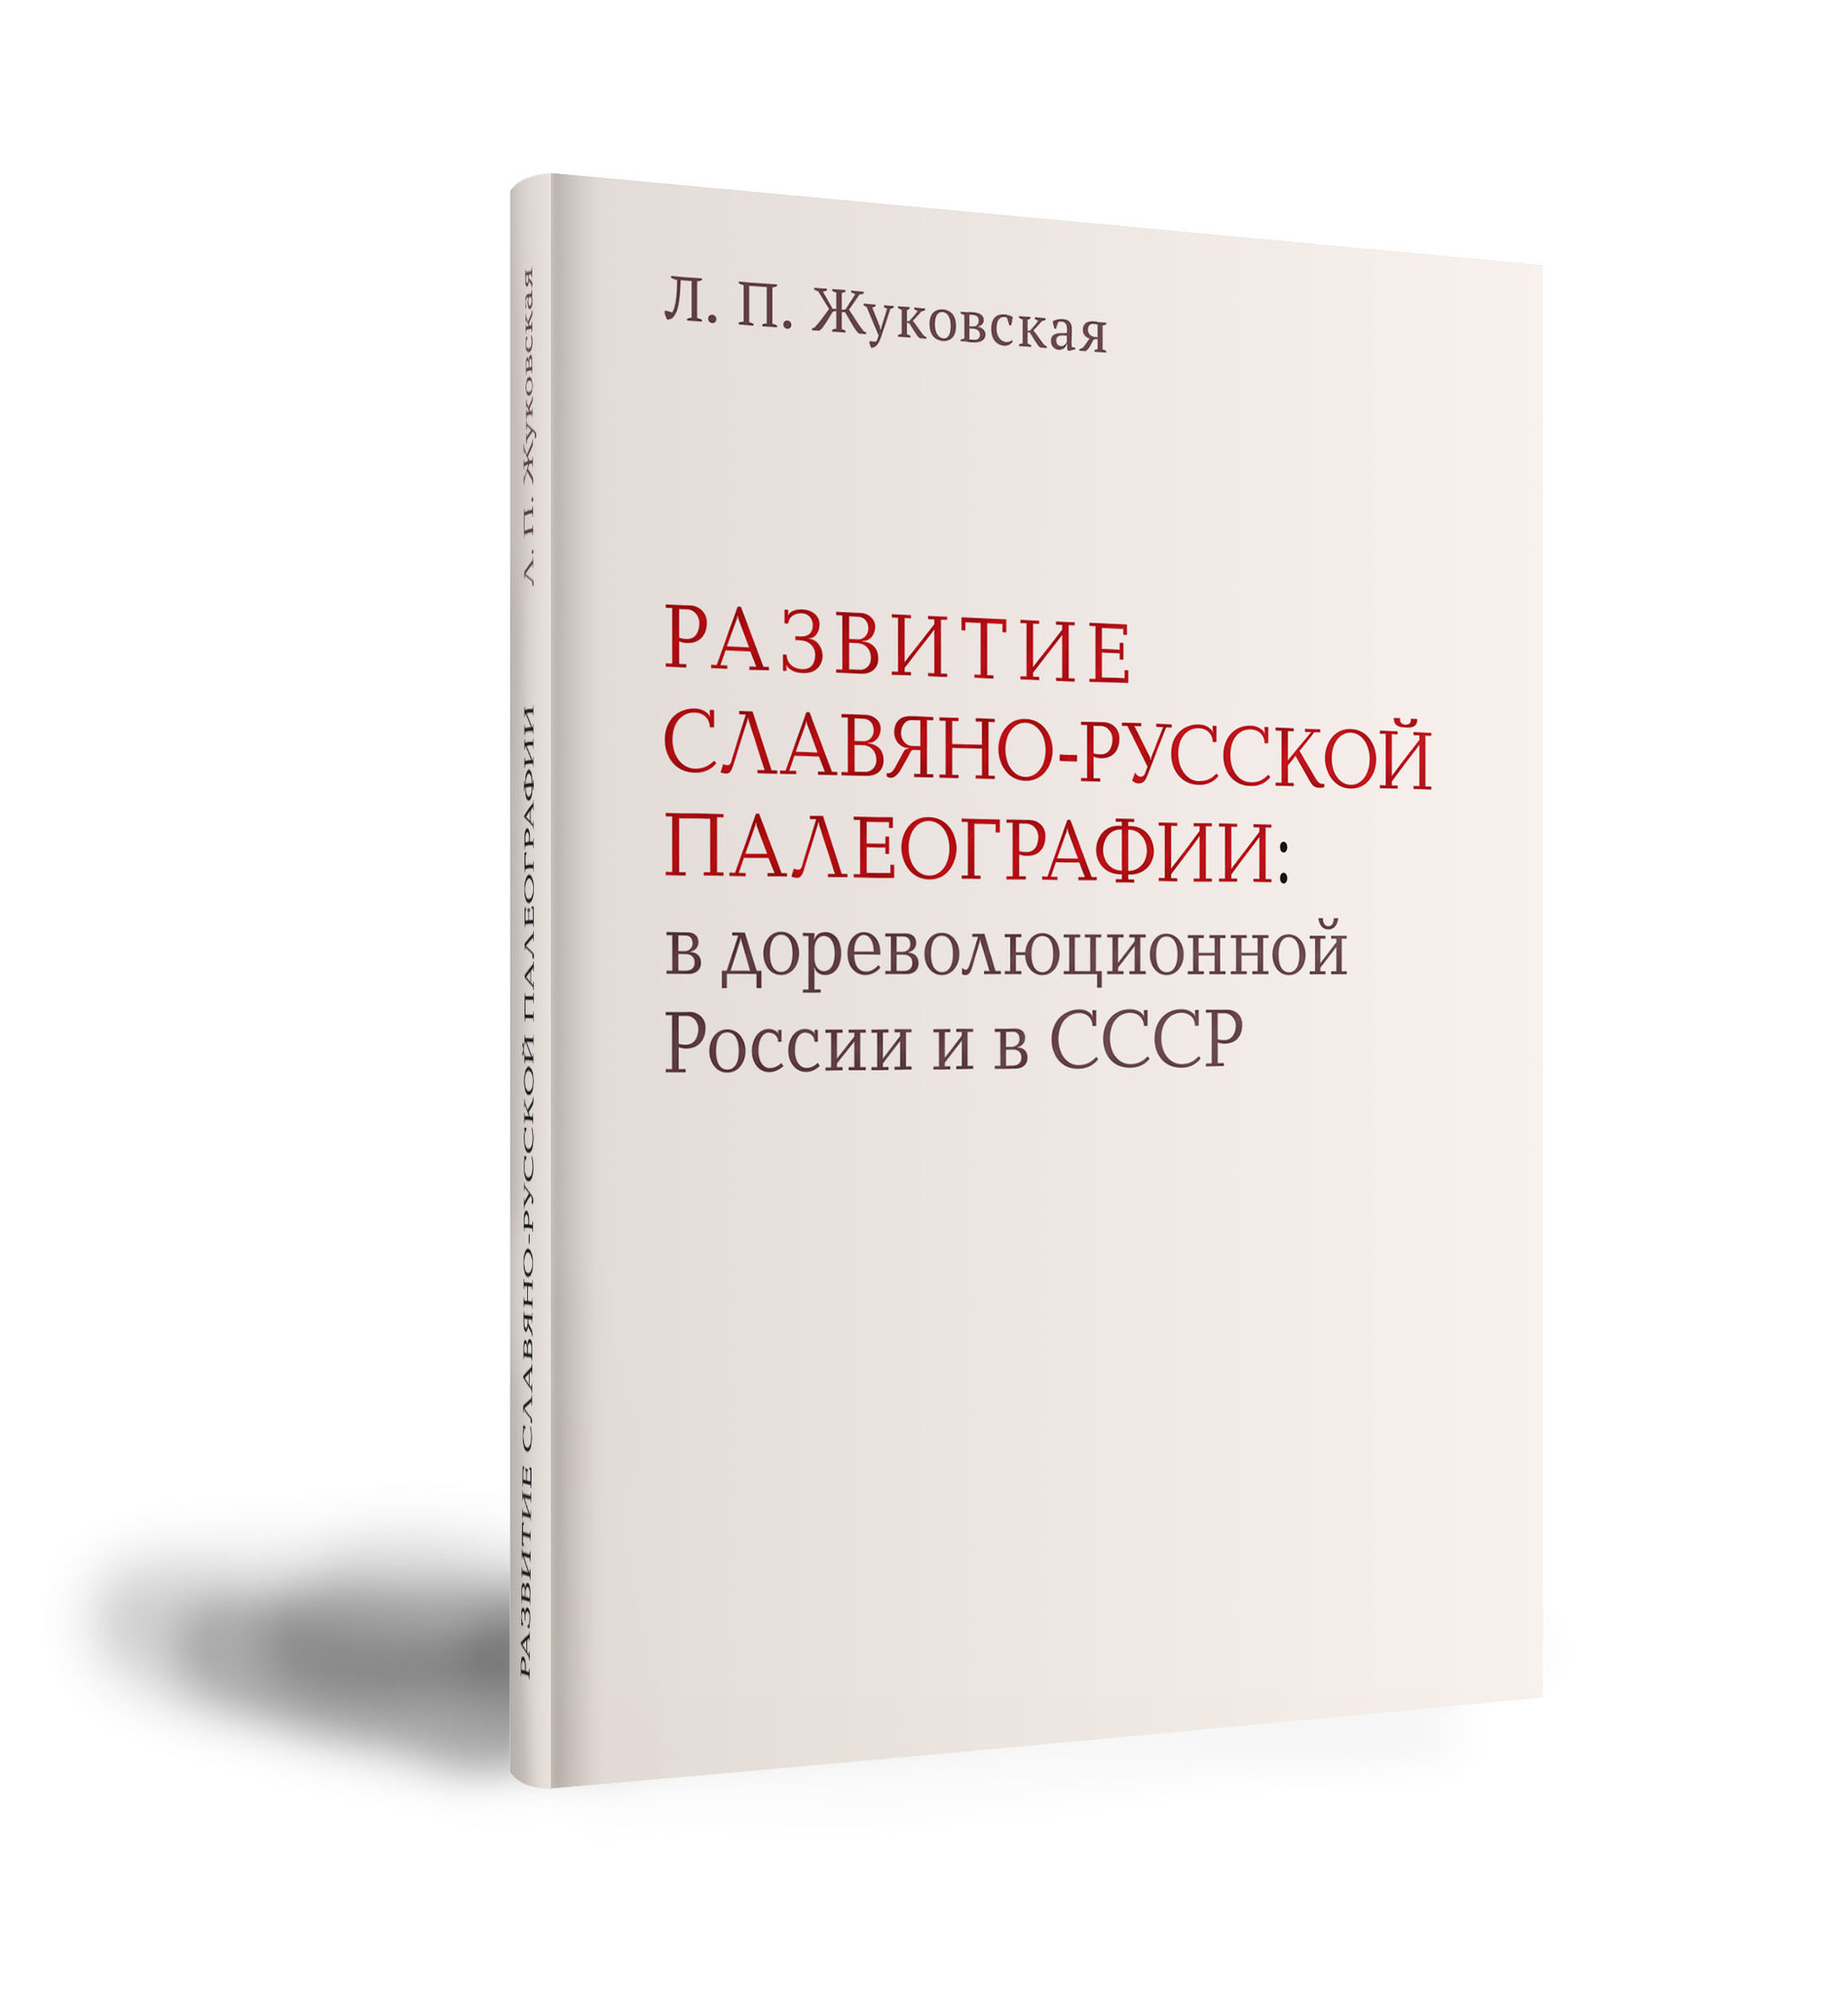 Развитие славяно-русской палеографии (в дореволюционной России и в СССР)